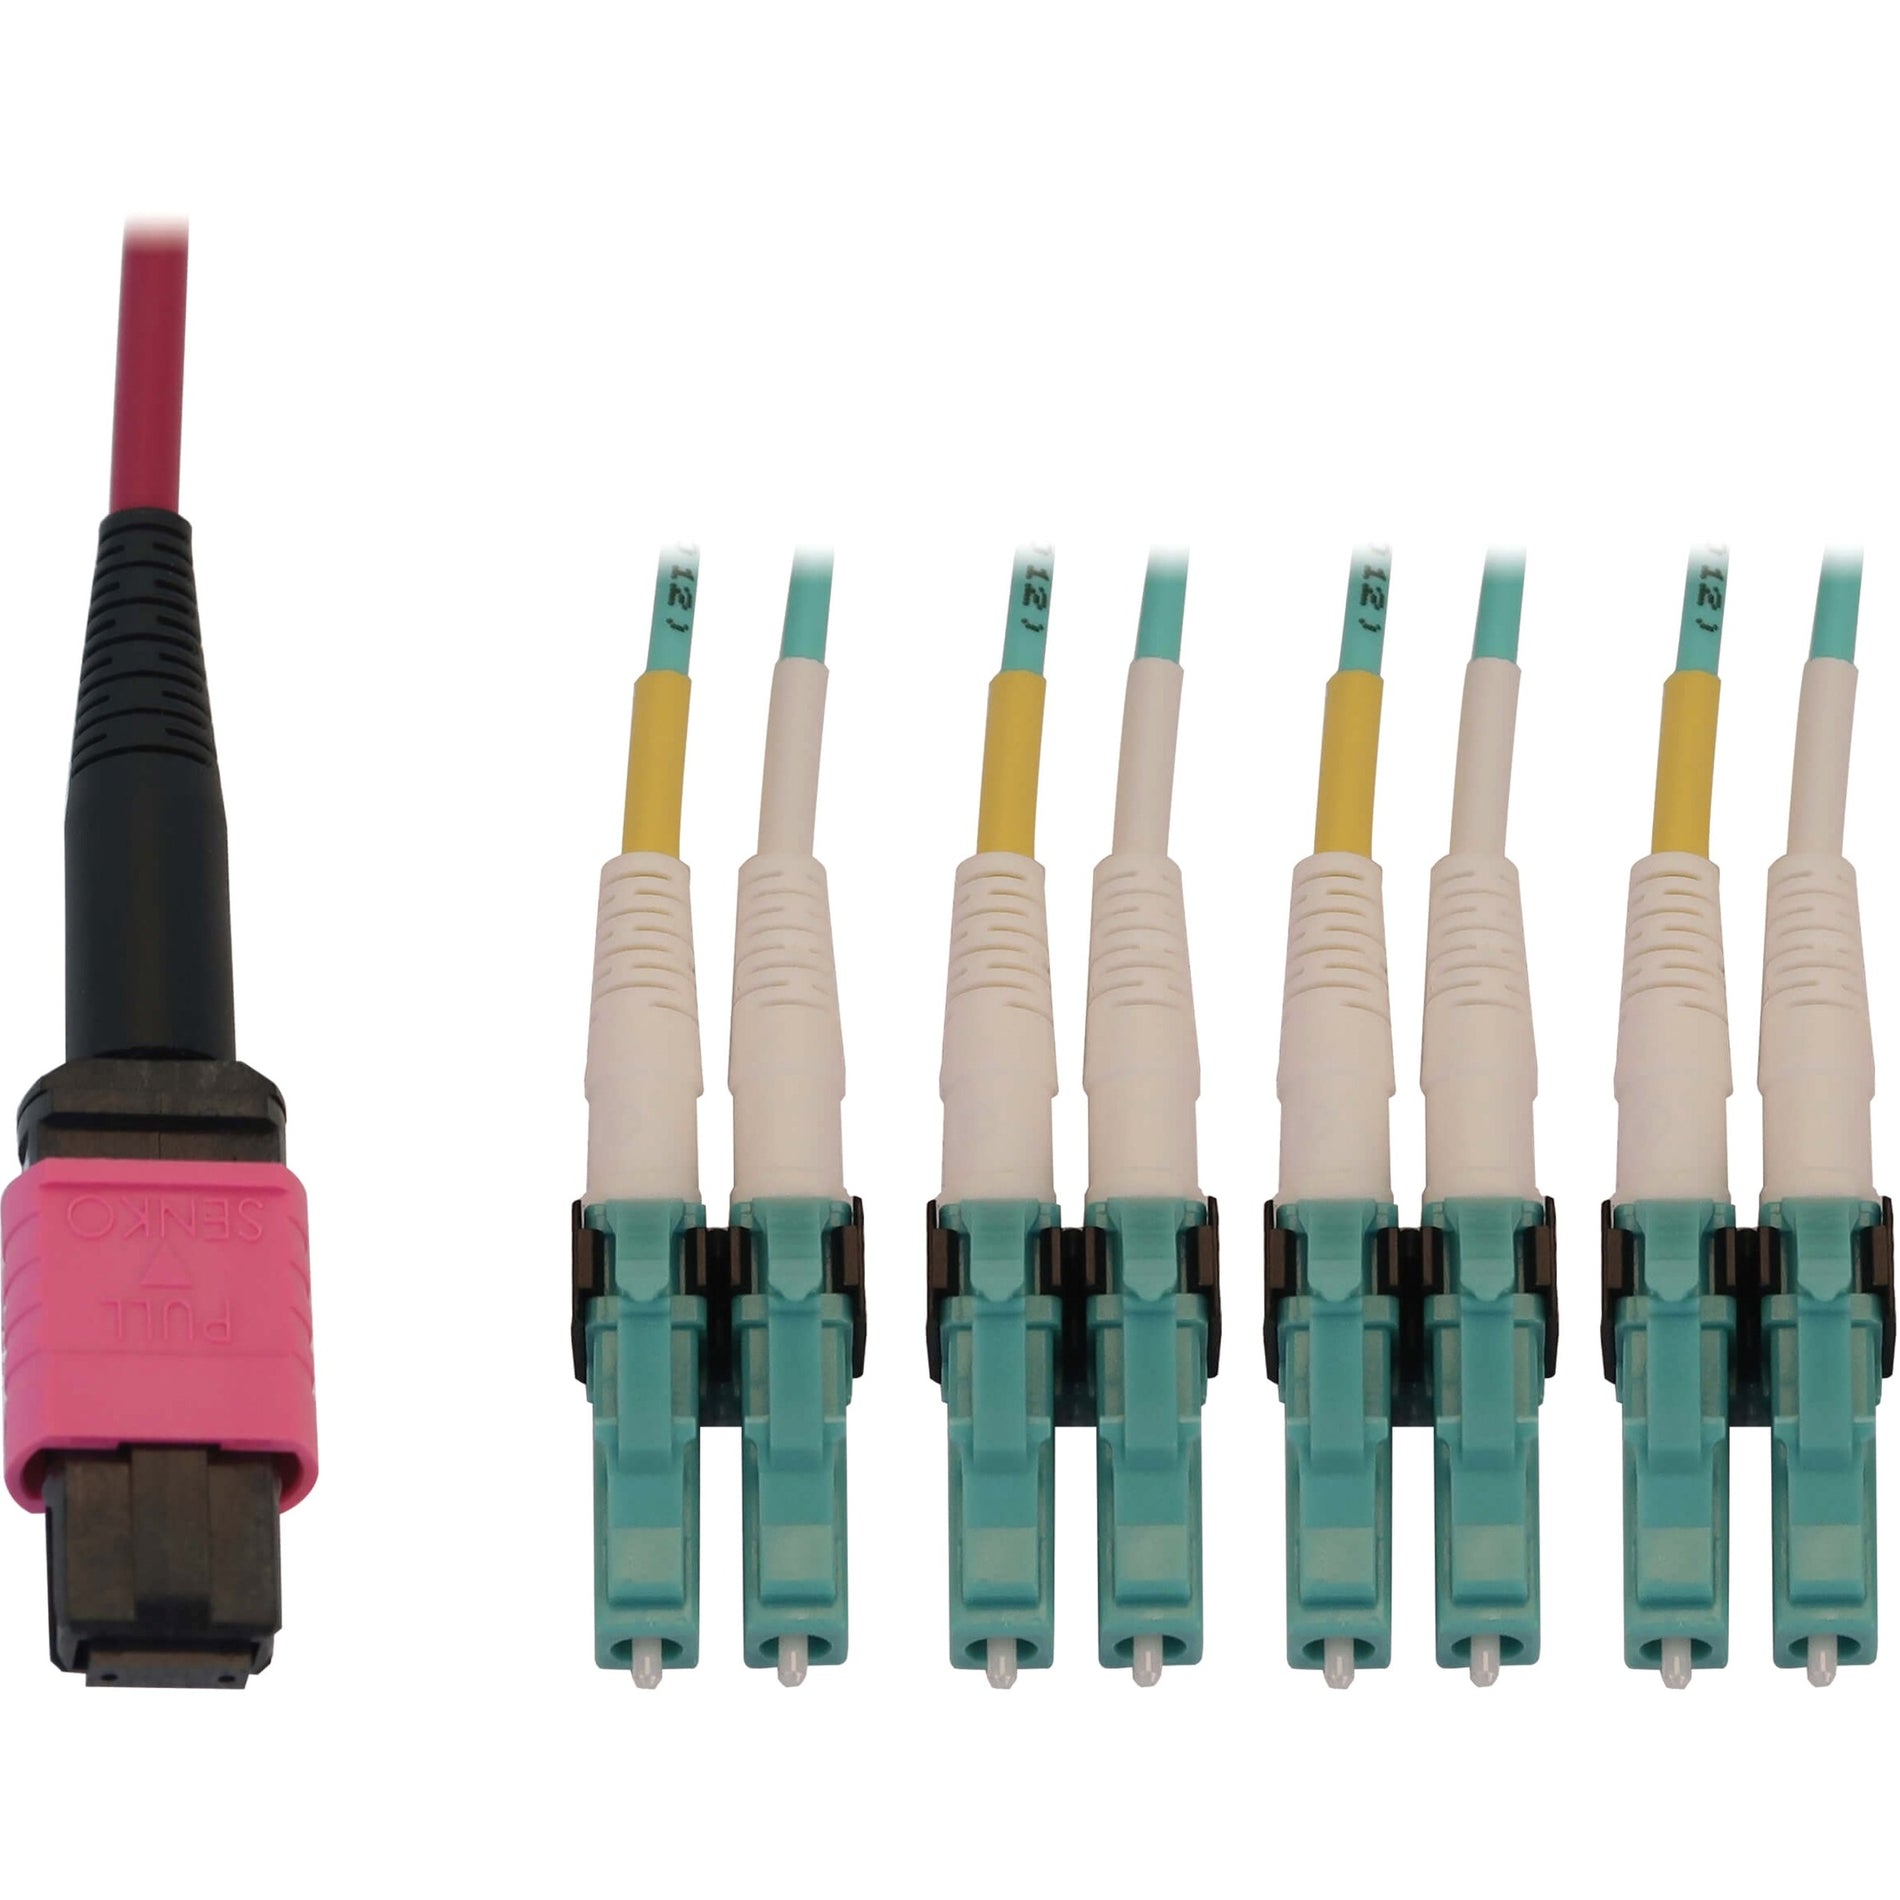 Tripp Lite N845X-03M-8L-MG Fiber Optic Duplex Trunk Network Cable, 9.84 ft, 100 Gbit/s, Magenta